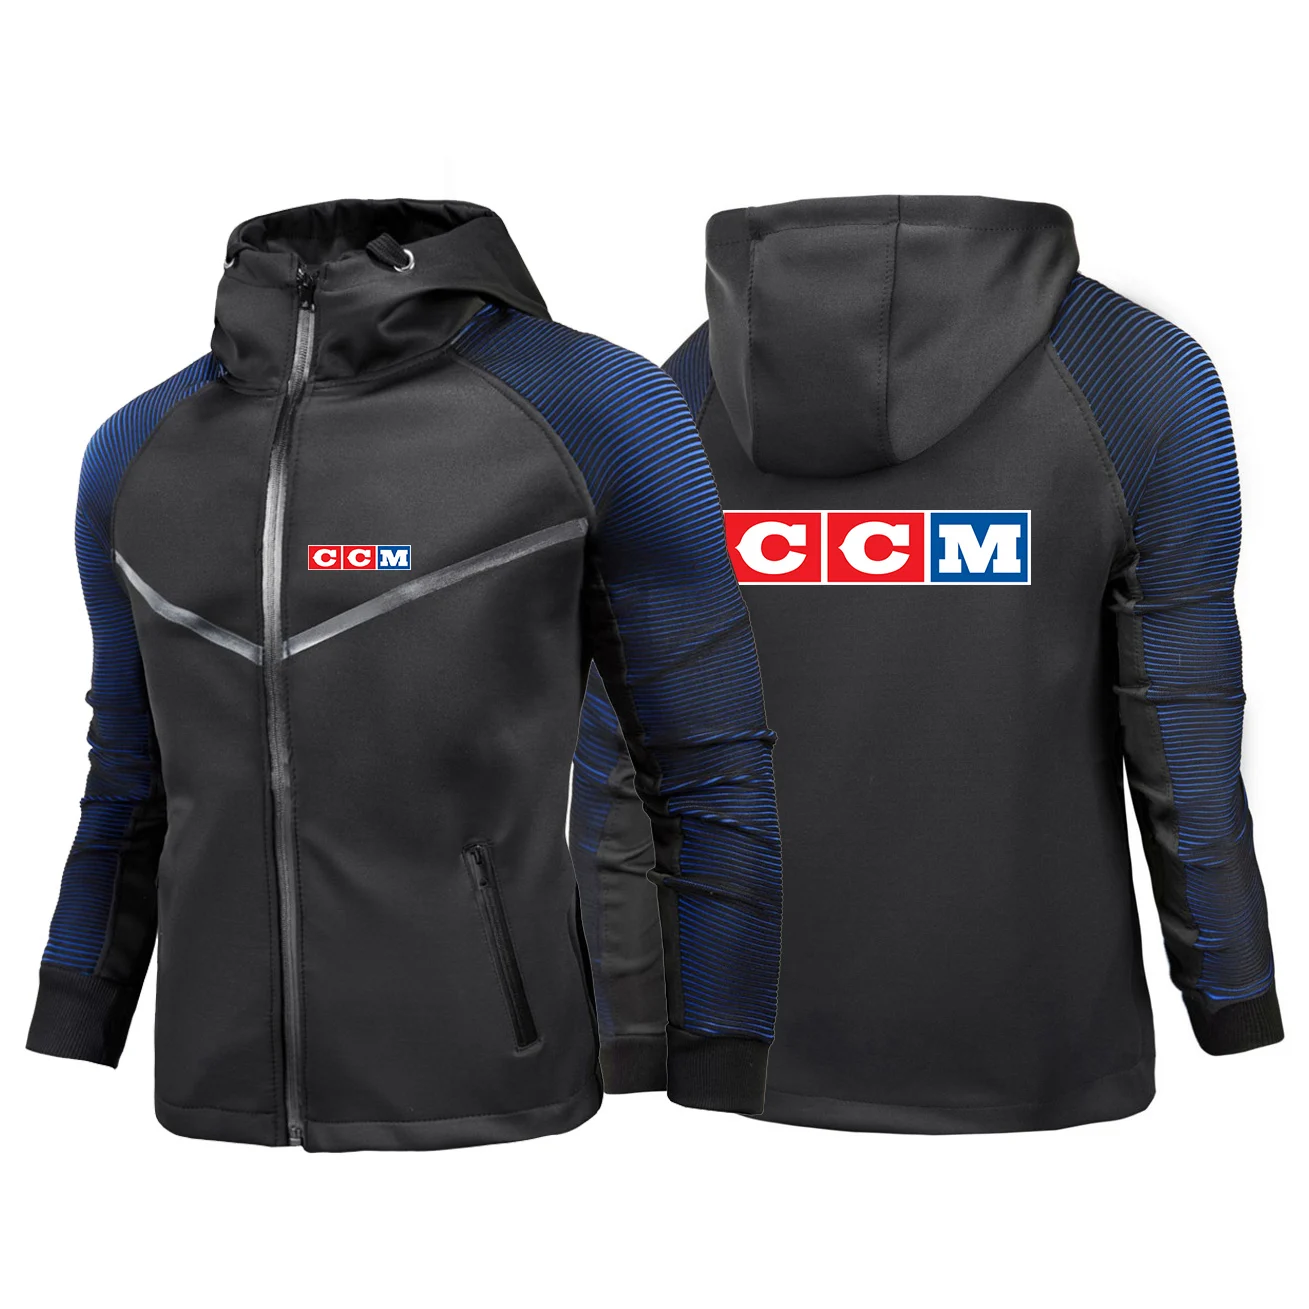 

2022 Men's CCM Printing Hoodies Sweatshirt Spring Autumn Comfortable Cardigan Racing Suit Zipper Jacket Coat